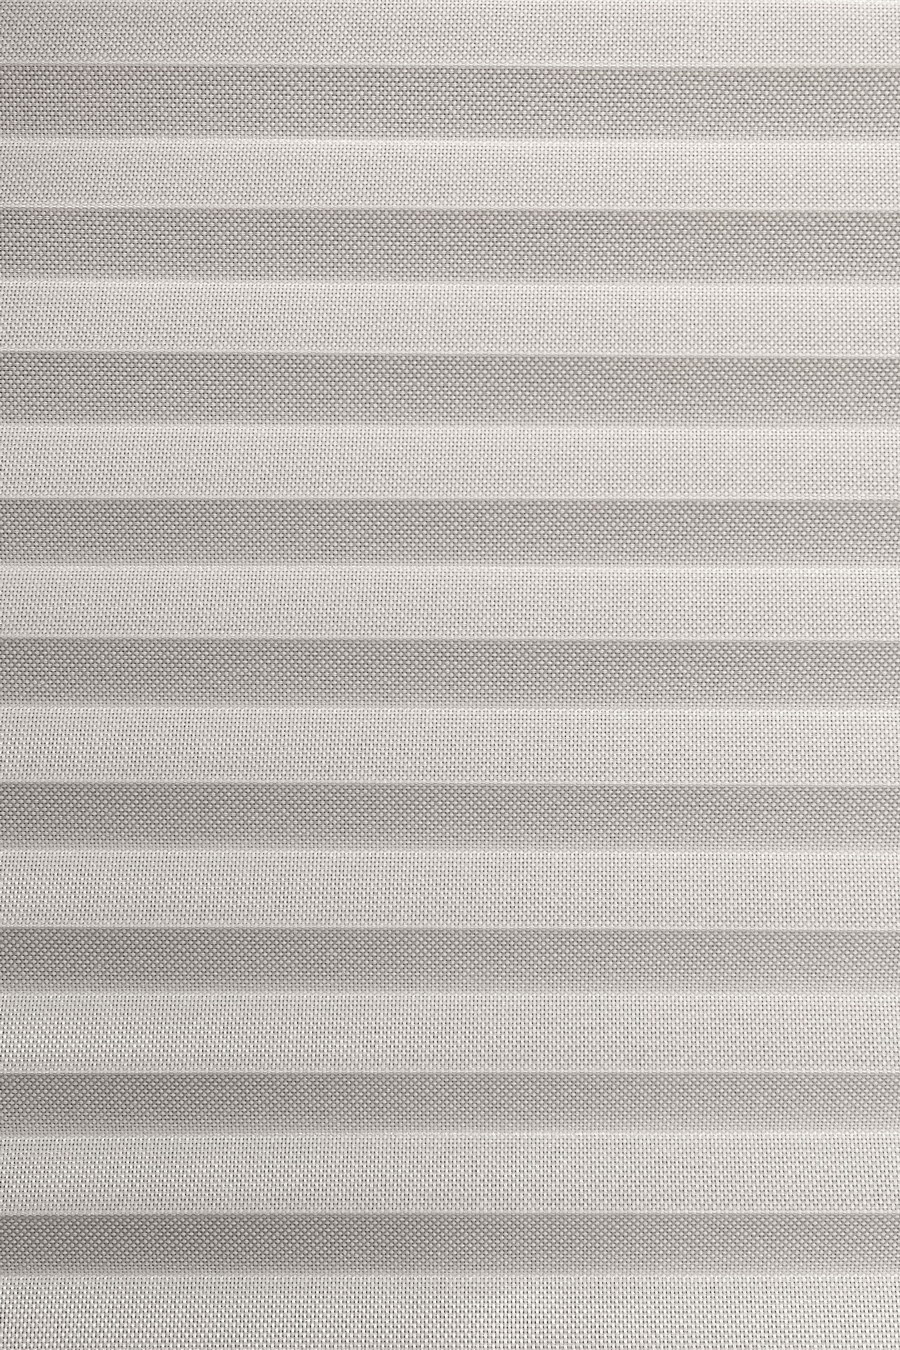 Ткань TRANSPARENT silkshade-white 7160 для штор плиссе